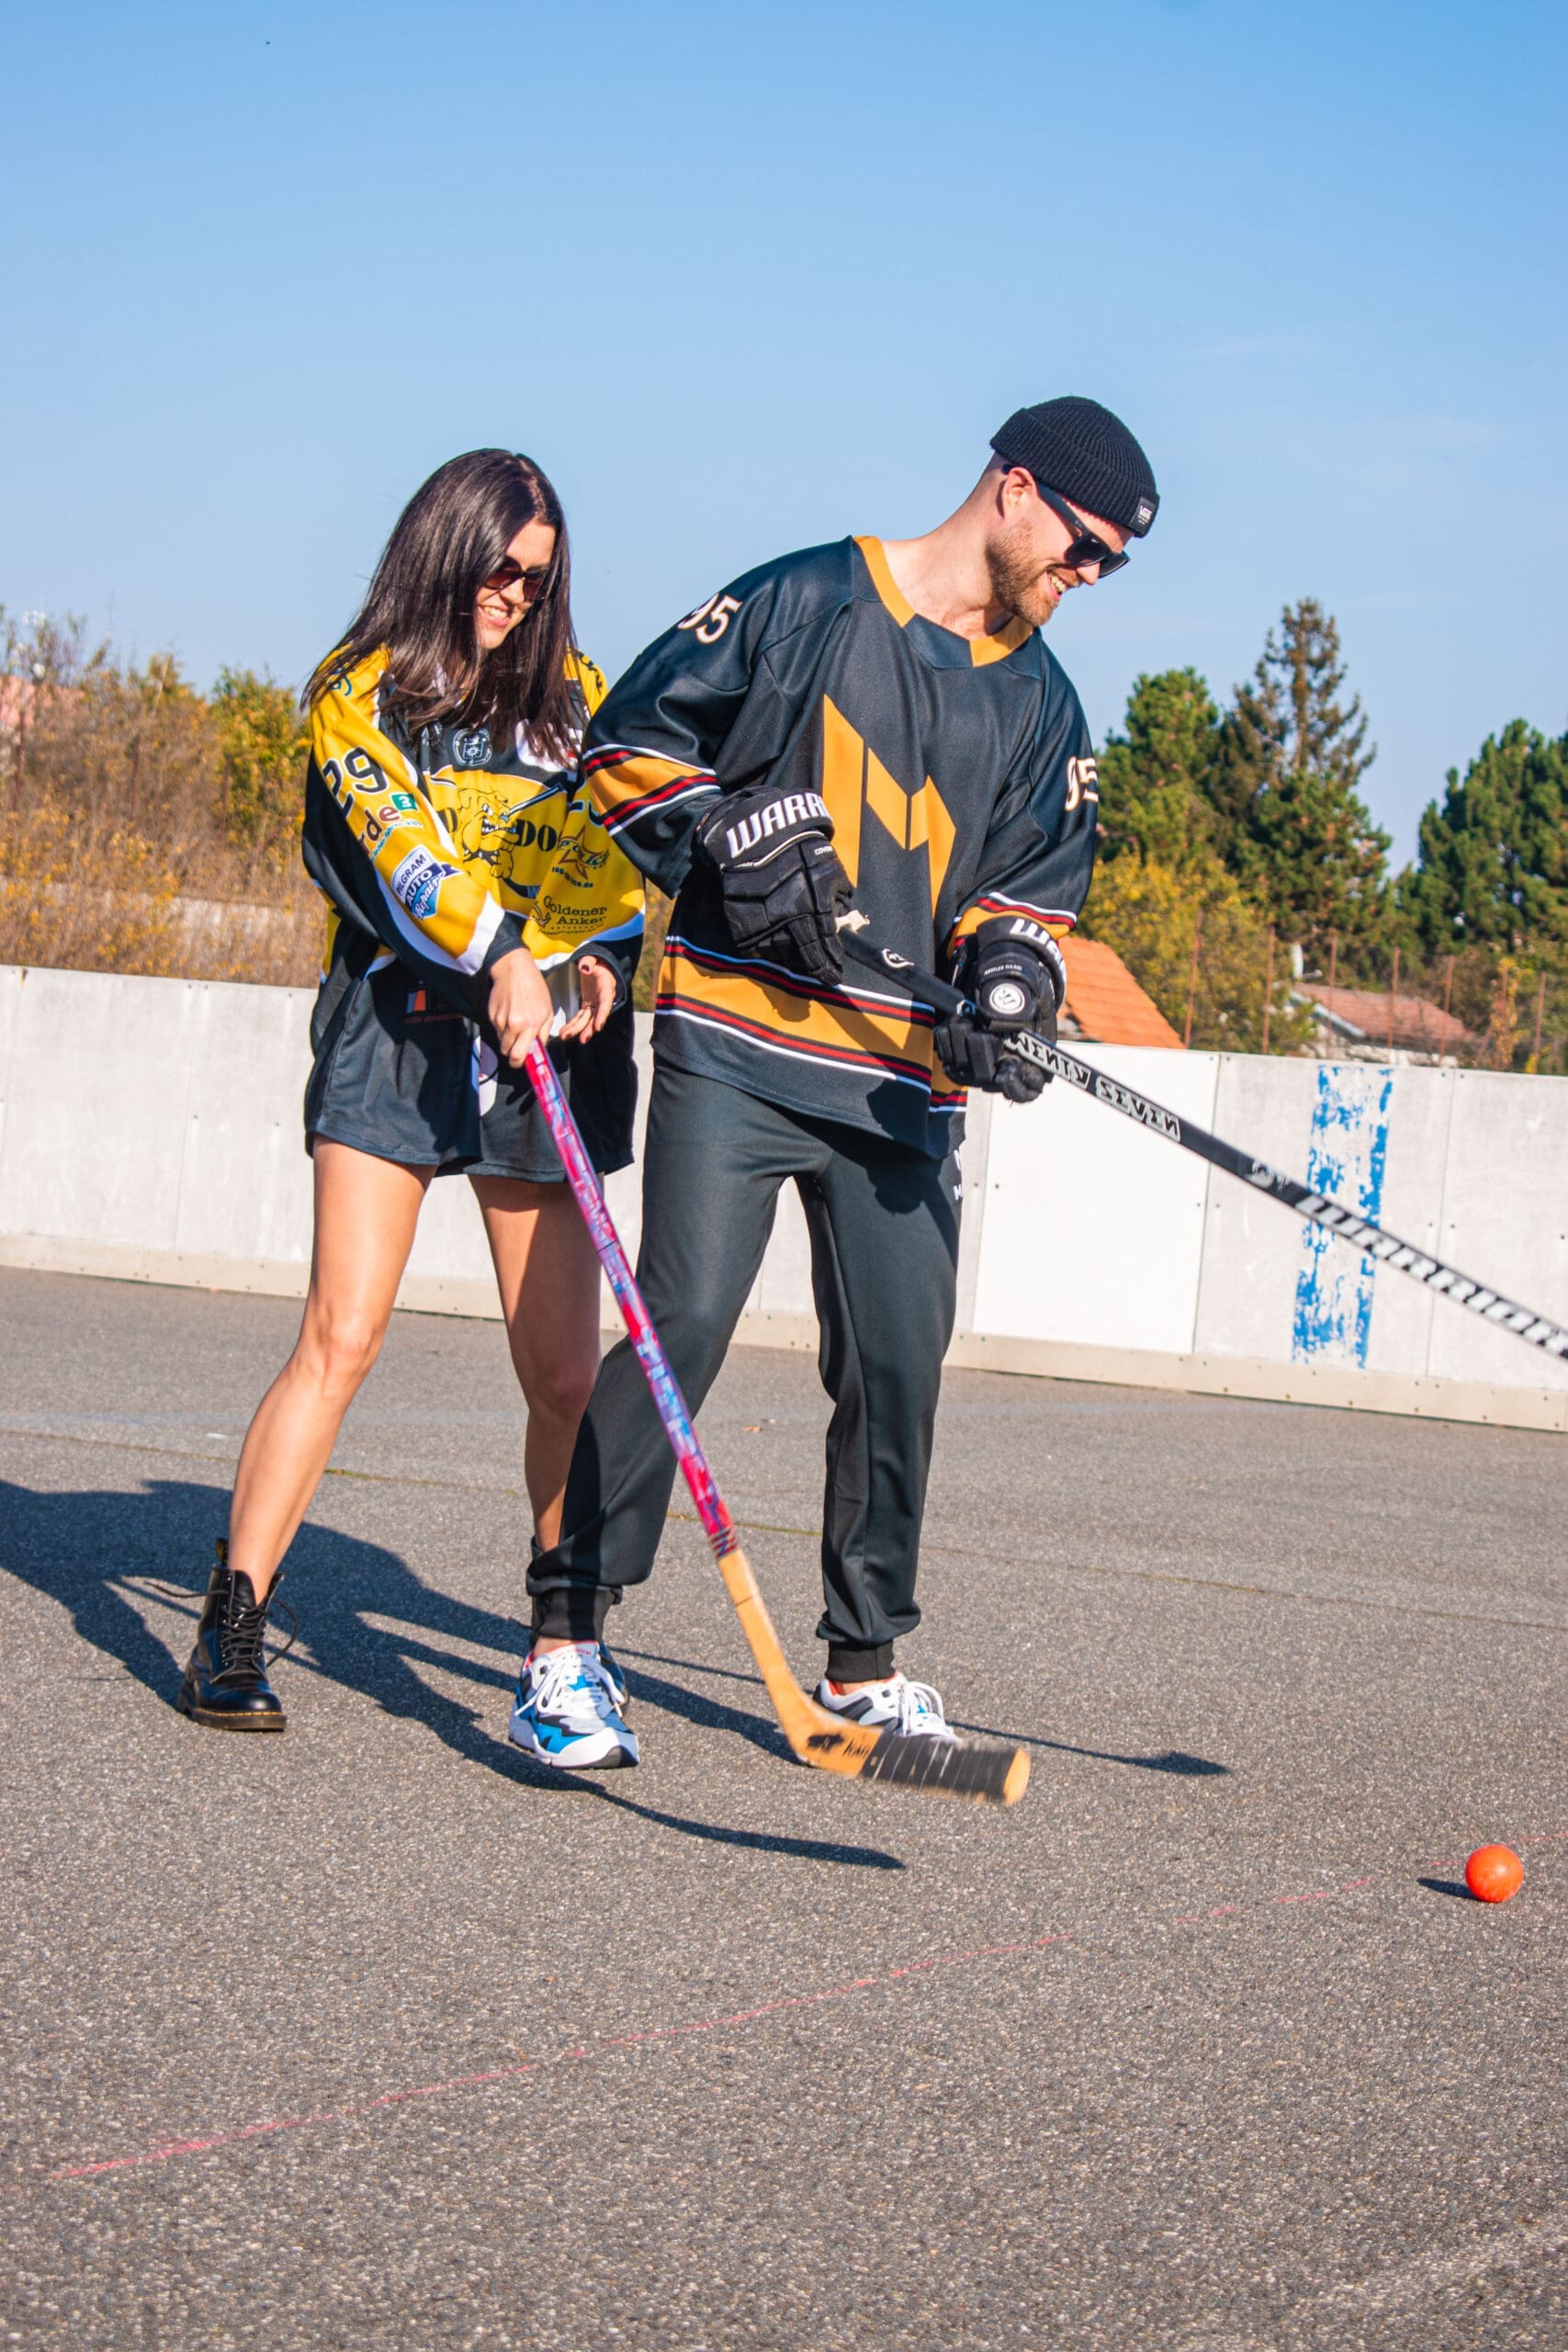 Muž a žena v dresech s potiskem hrají hokejbal